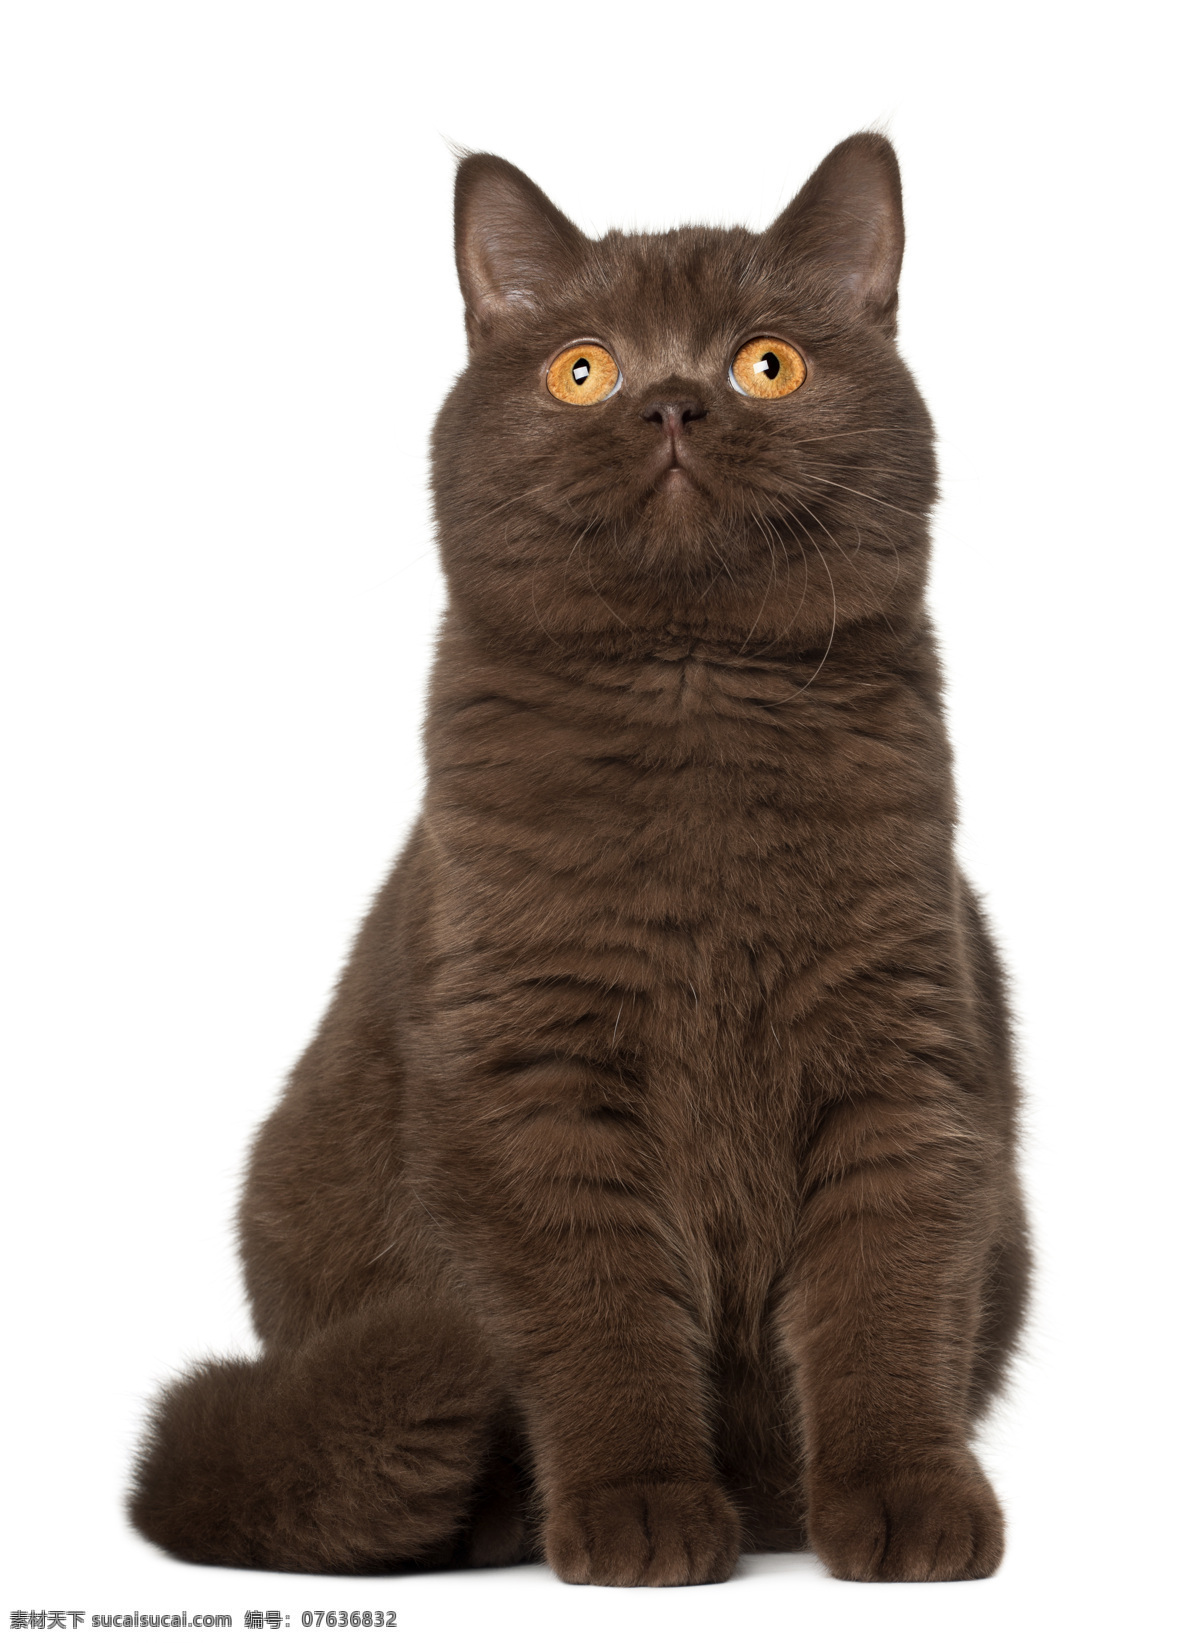 英国短毛猫 猫 猫咪 家猫 宠物猫 小猫 家畜 动物 各种猫 家禽家畜 生物世界